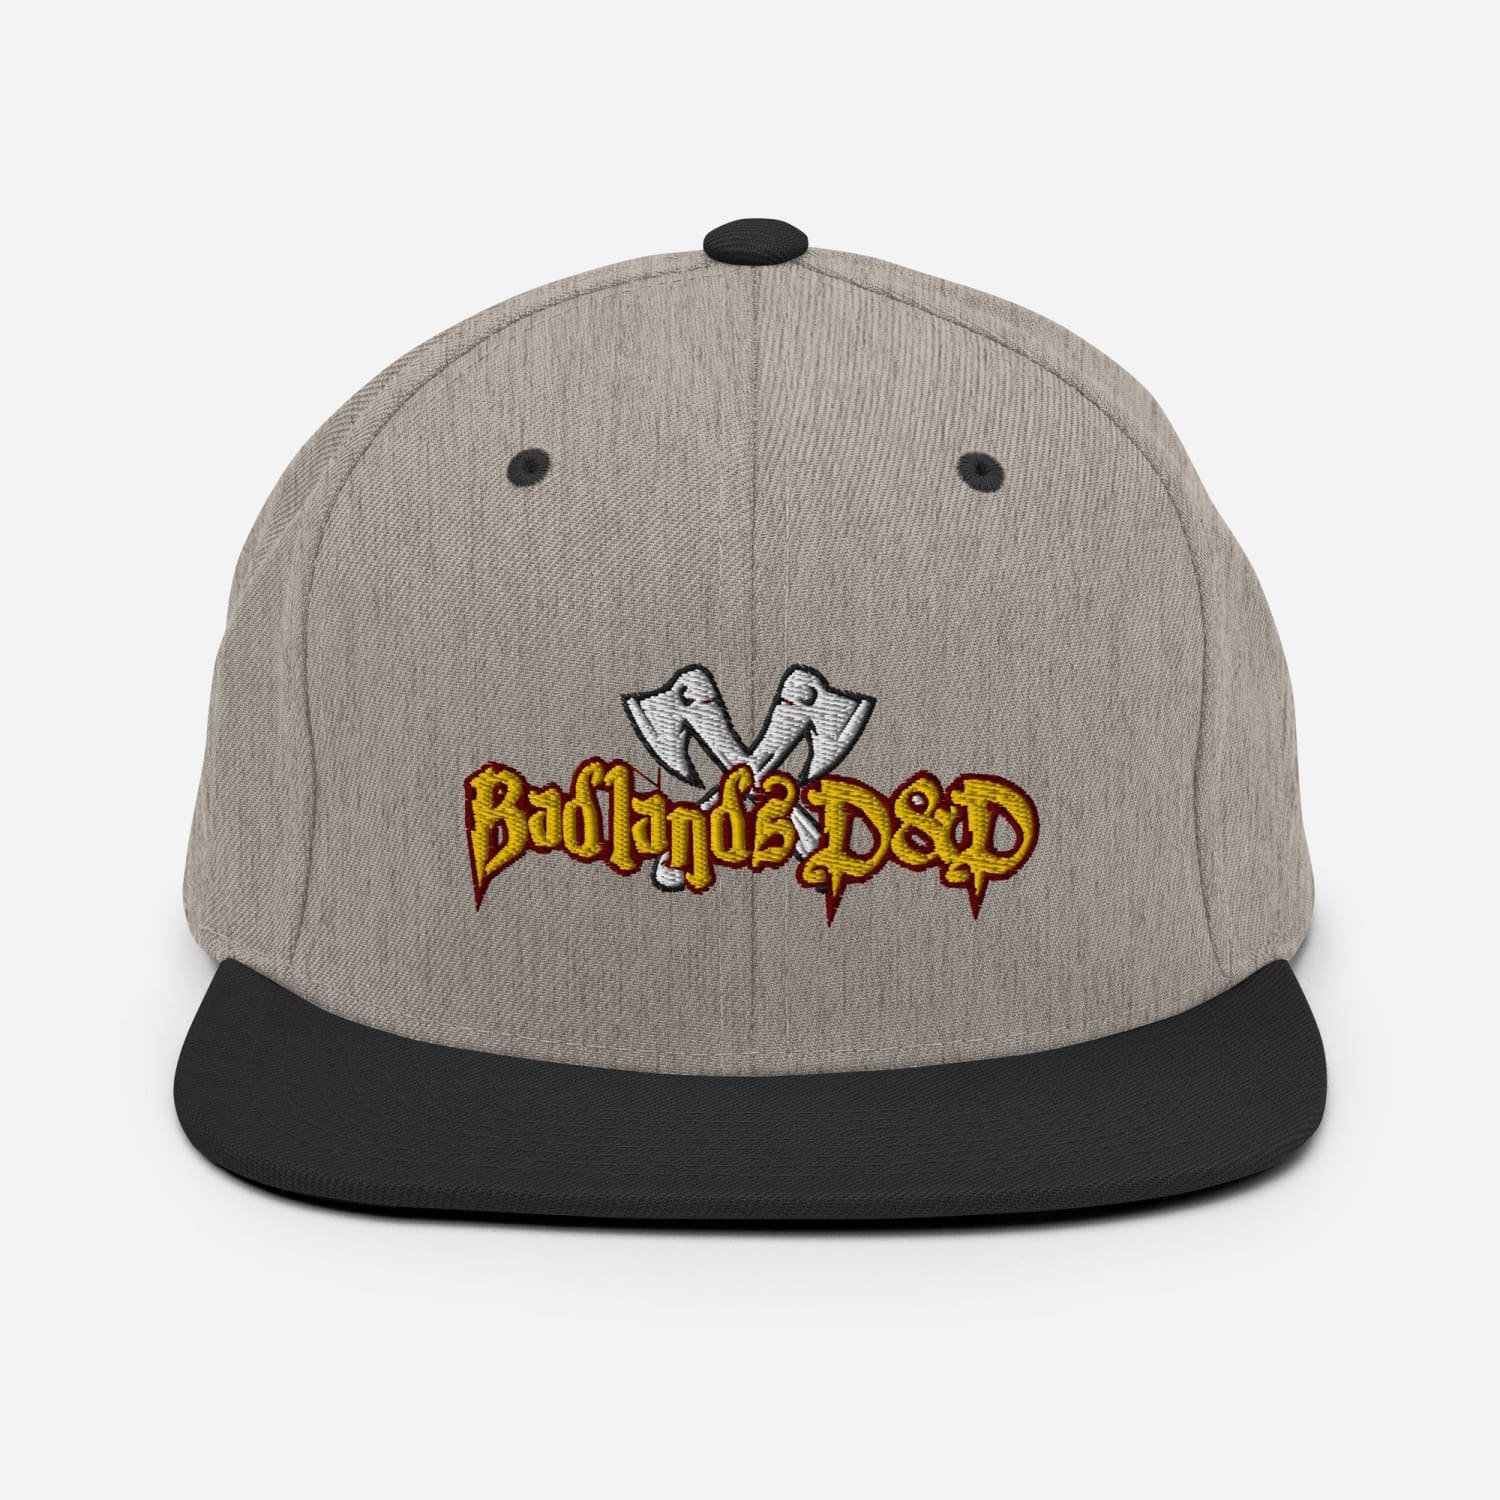 Badlands D&D Logo Classic Snapback Cap - Heather/Black